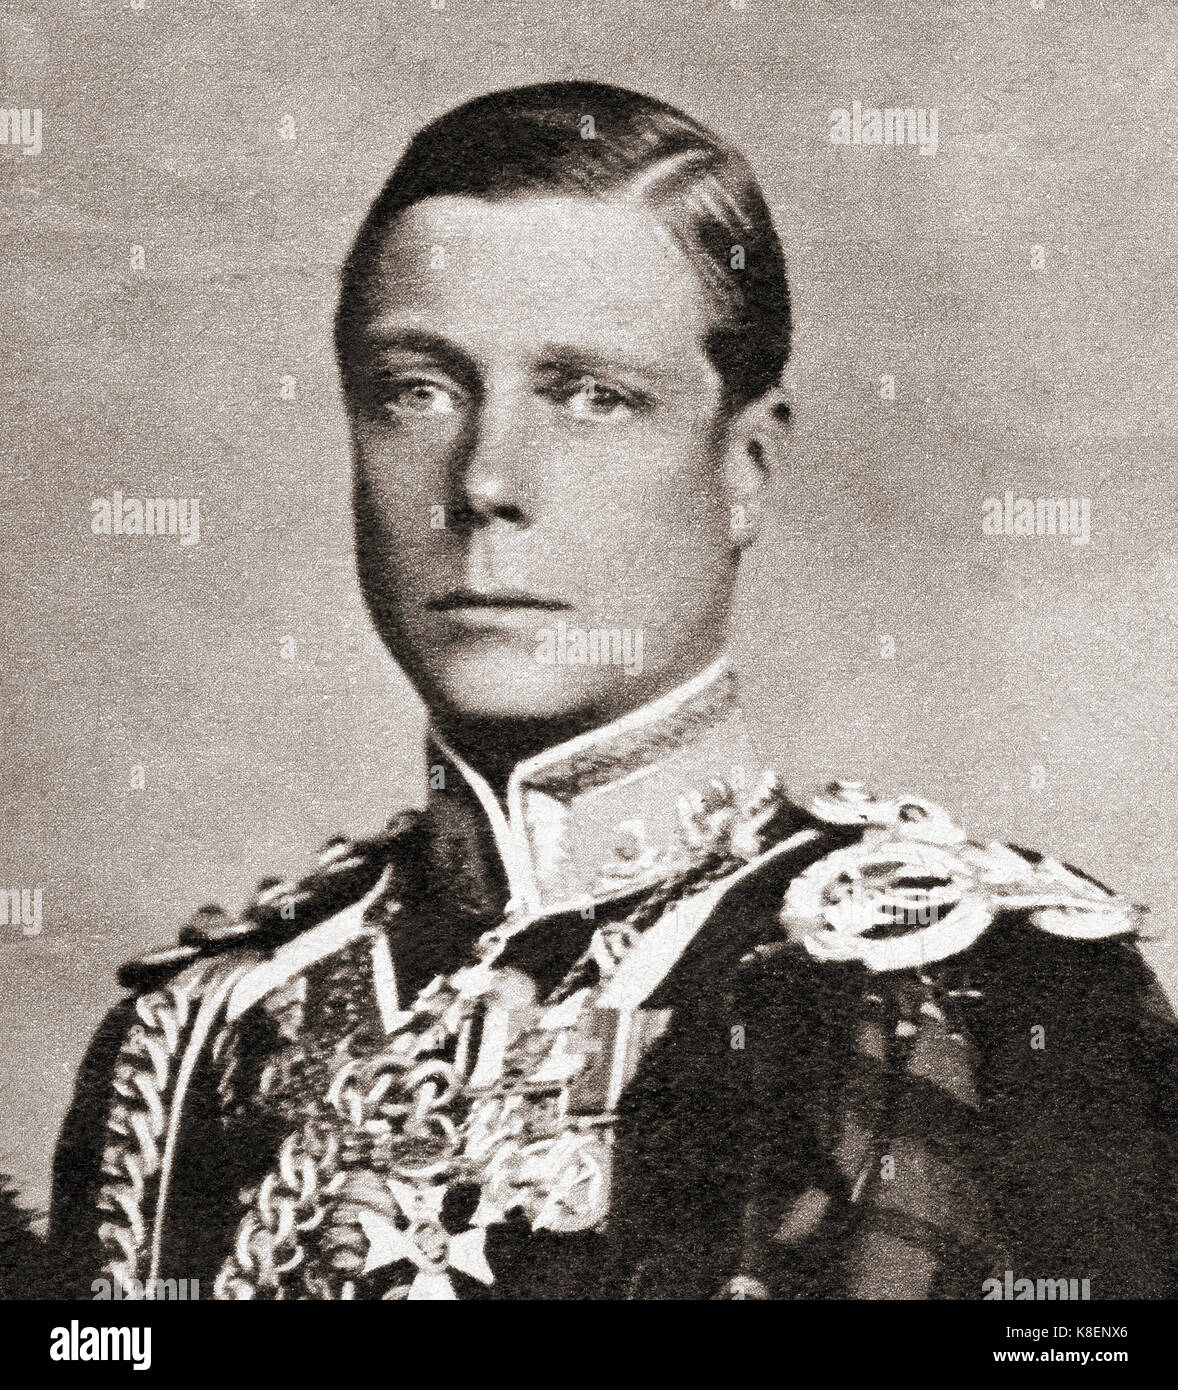 Le Prince de Galles en 1935. Plus tard, Édouard VIII , Edward Albert Christian George Andrew Patrick David ; plus tard, le duc de Windsor, 1894 à 1972. Roi du Royaume-Uni et des Dominions du Commonwealth britannique, et l'empereur de l'Inde, à partir de 20 janvier 1936 jusqu'à son abdication le 11 décembre 1936. Banque D'Images